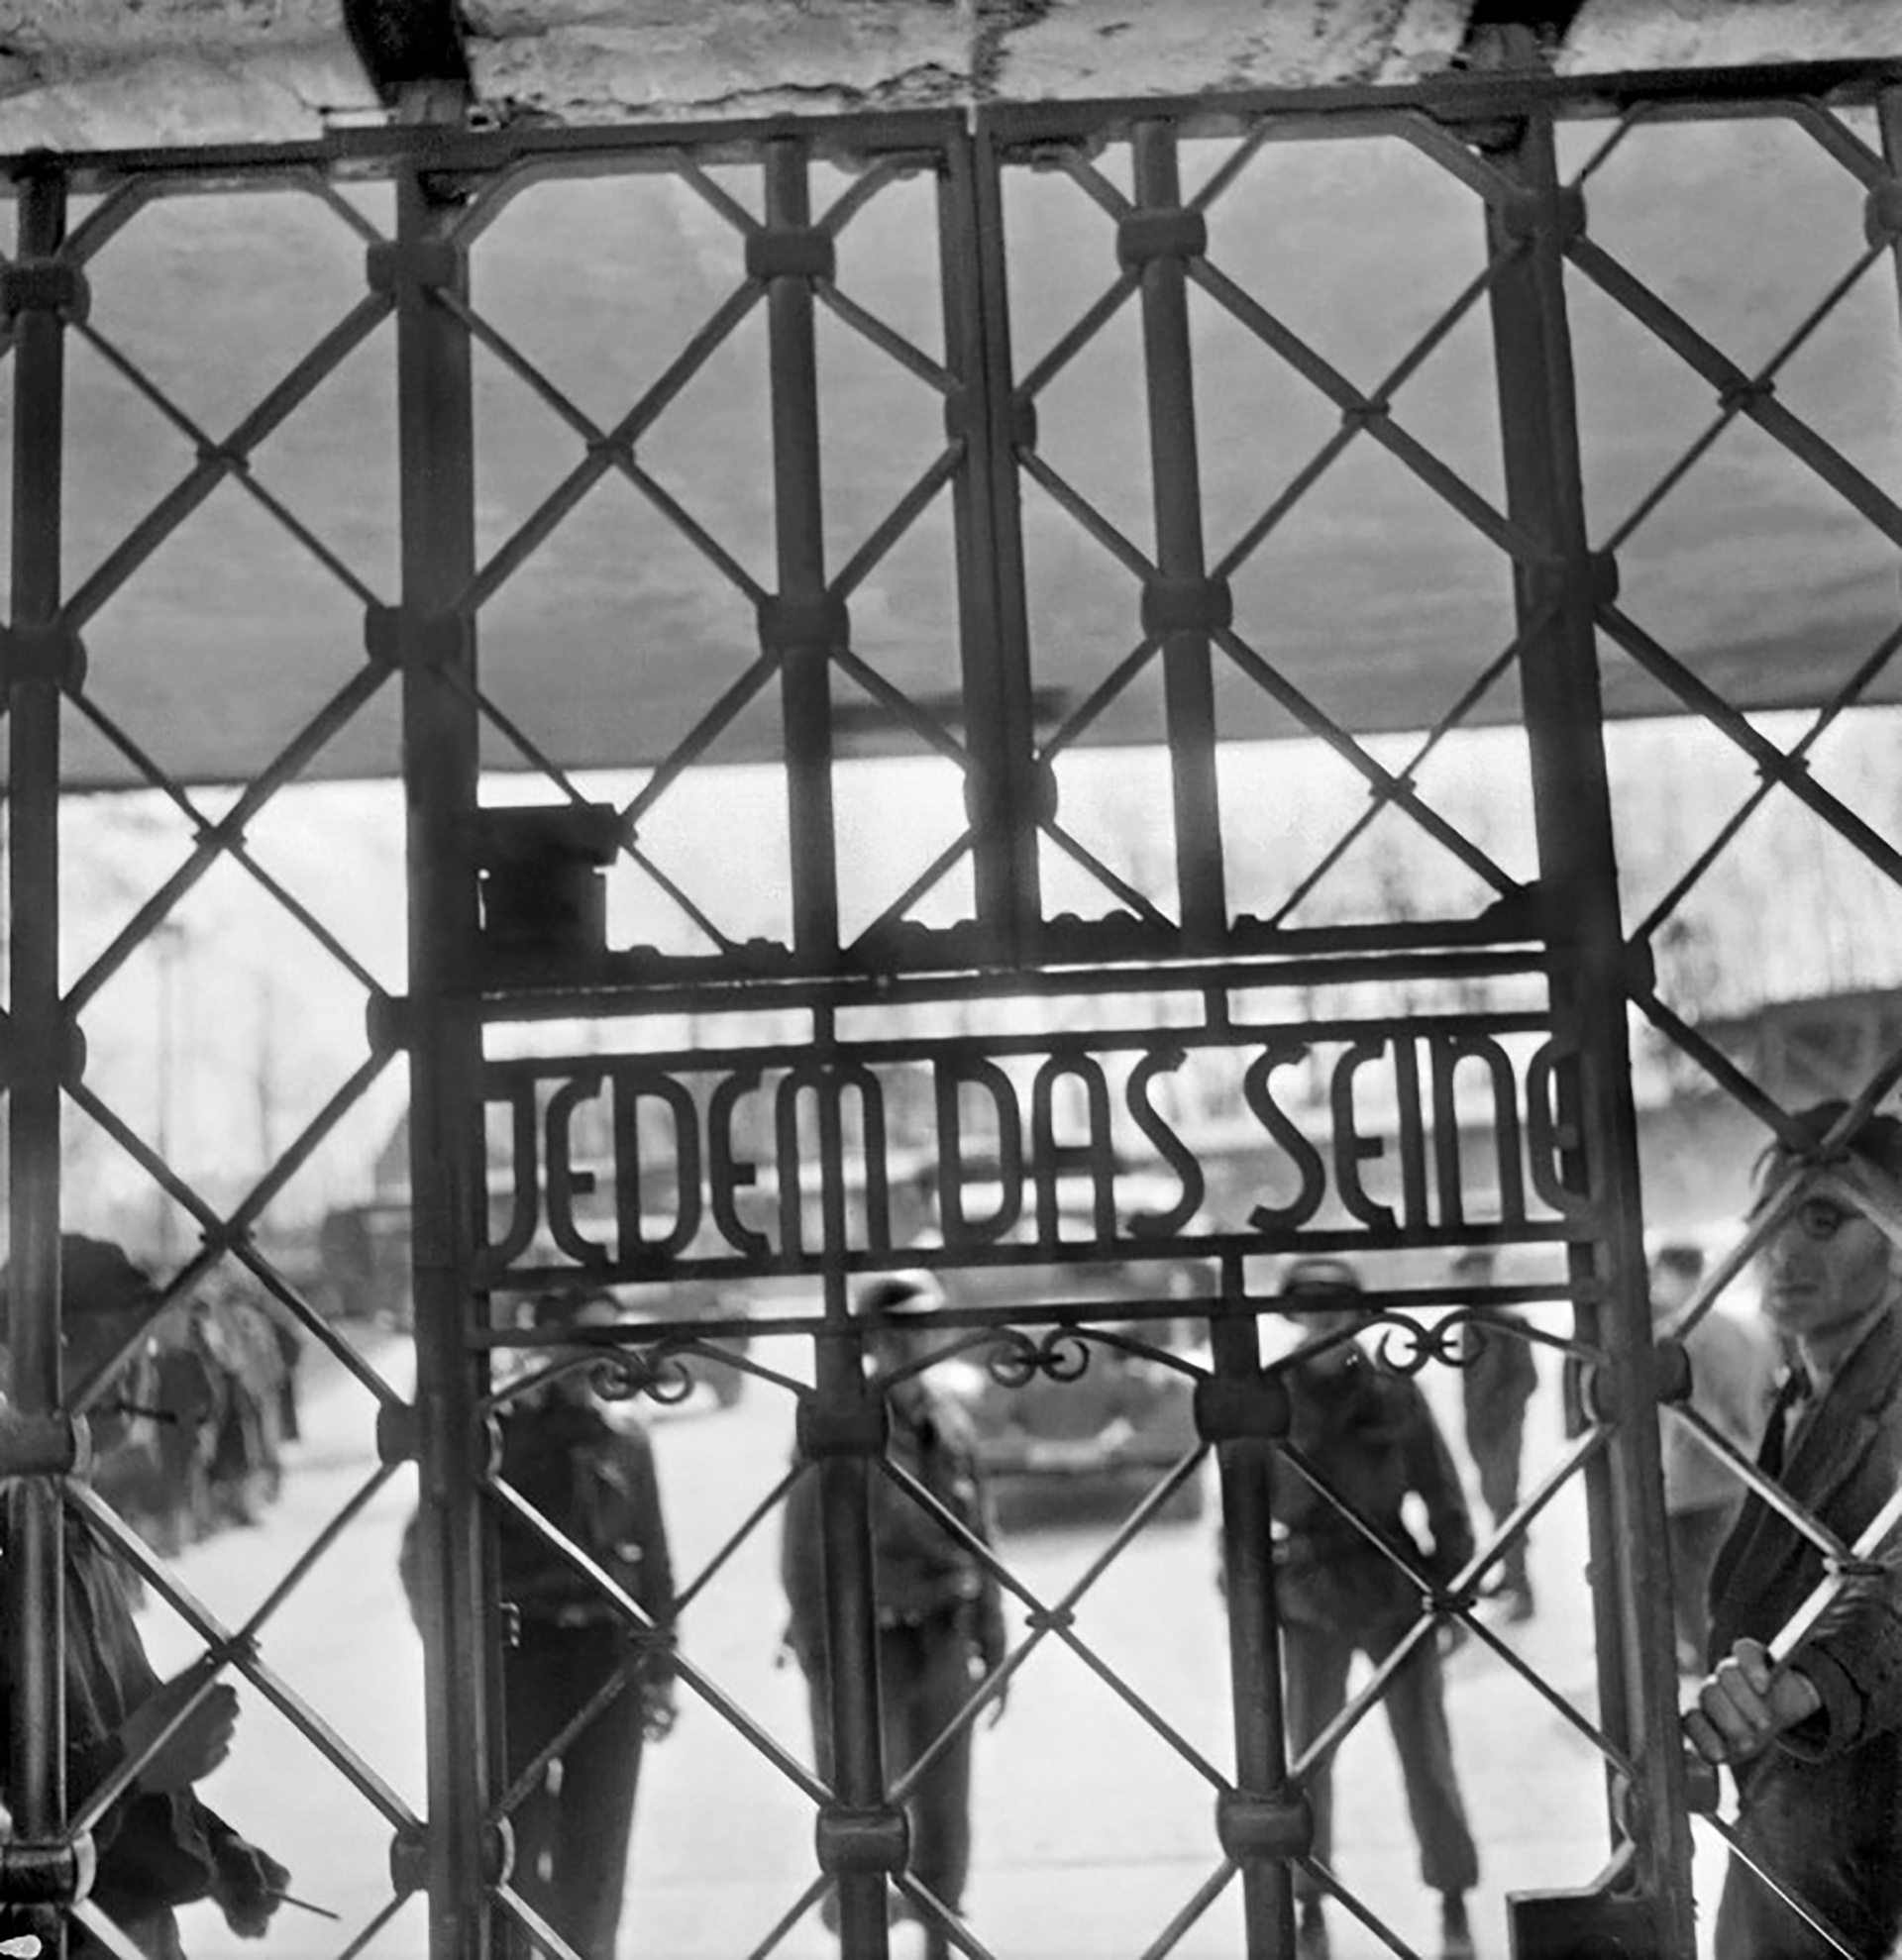 La puerta del campo de Buchenwald donde se leía 'Jedem das seine' (A cada uno lo que merece), en la imagen que inmortalizó el fotógrafo francés que le mostró al mundo el horror (AFP/ Eric Schwab)